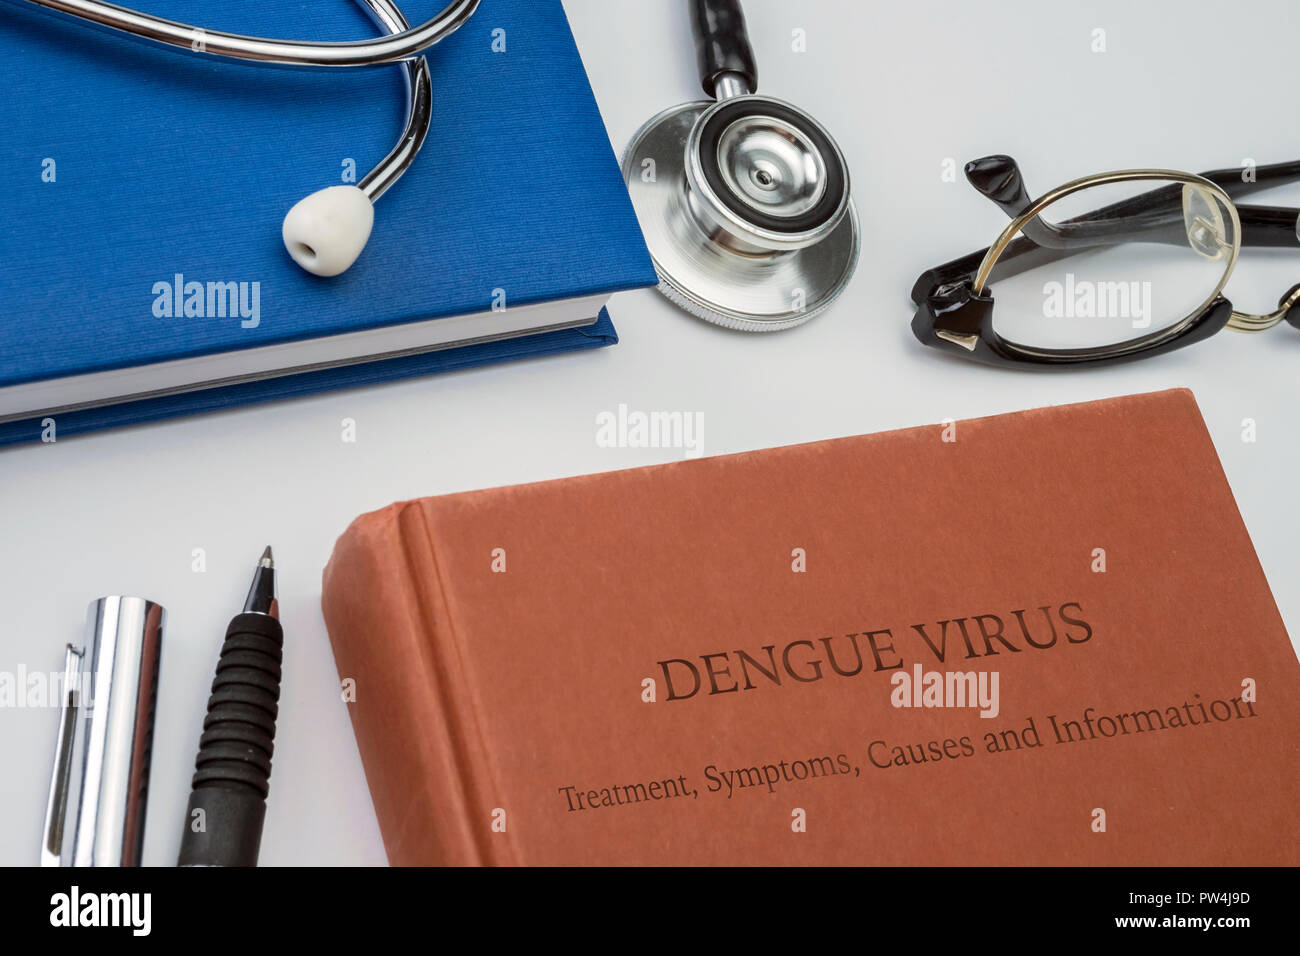 Denguefieber, Behandlung, Symptome, Ursachen und Informationen in einer Medizin Buch mit Stethoskop und vintage Brille geschrieben, konzeptionelle Bild Stockfoto